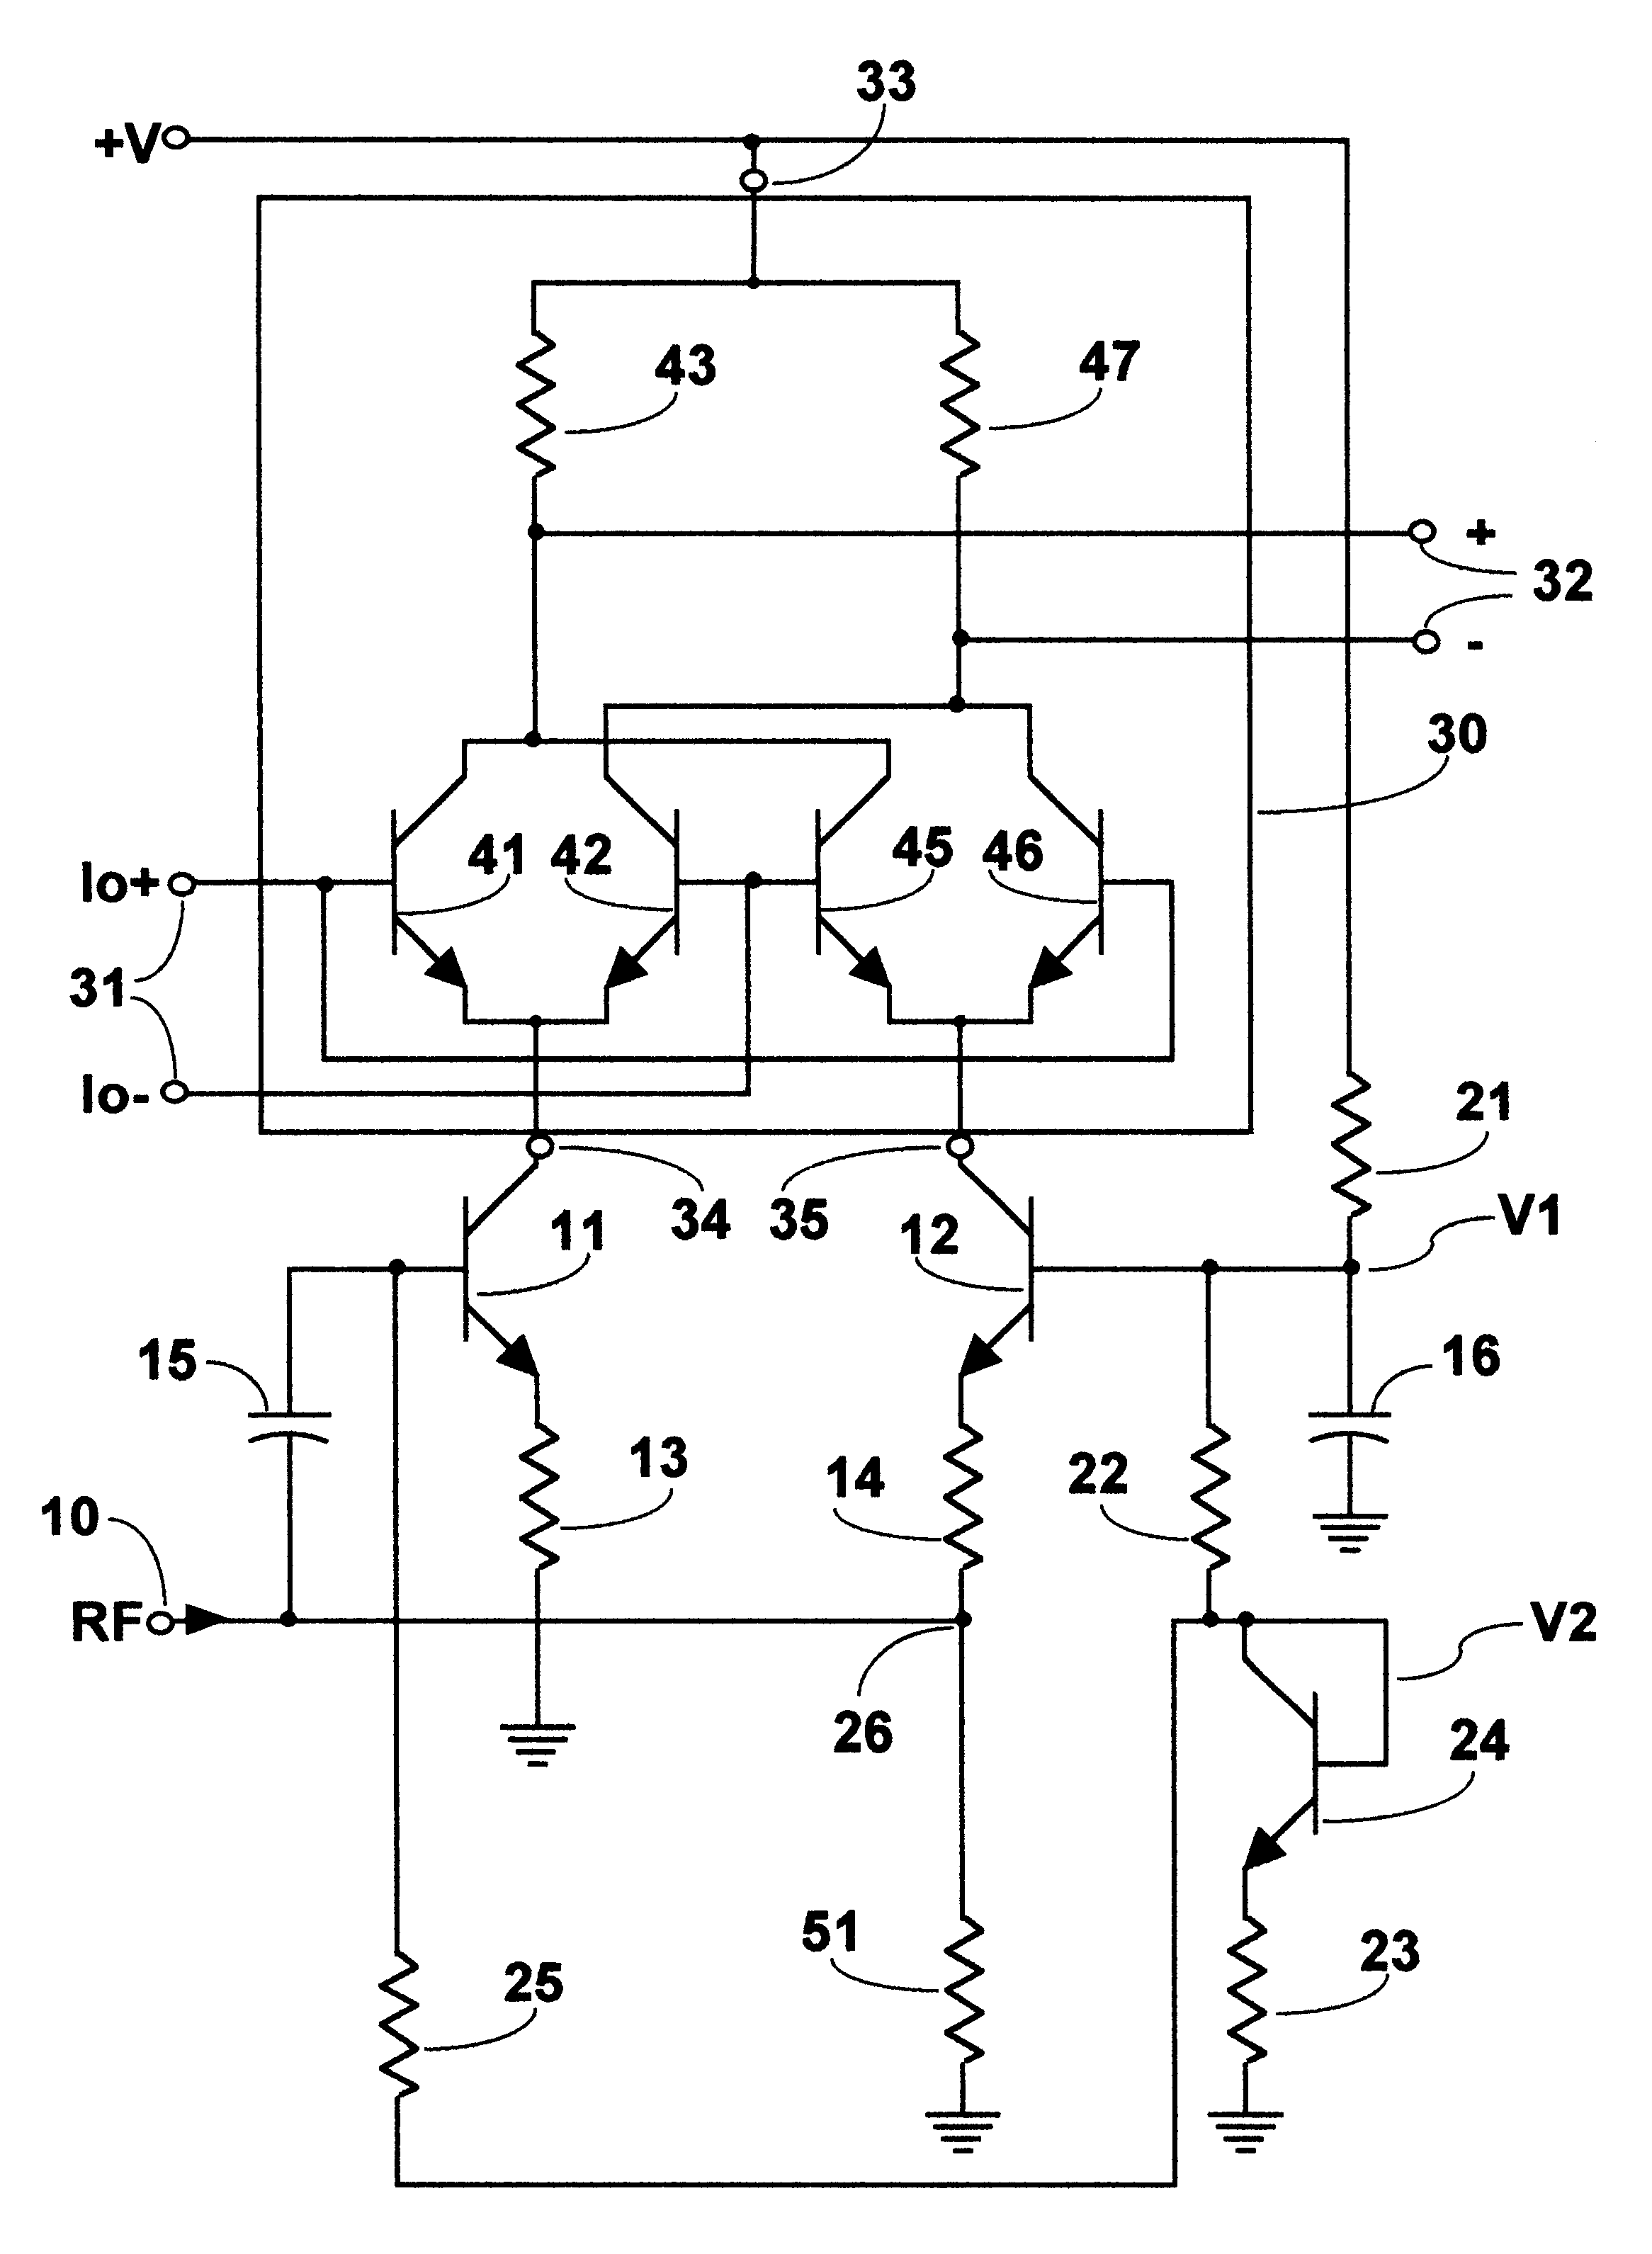 Low voltage mixer